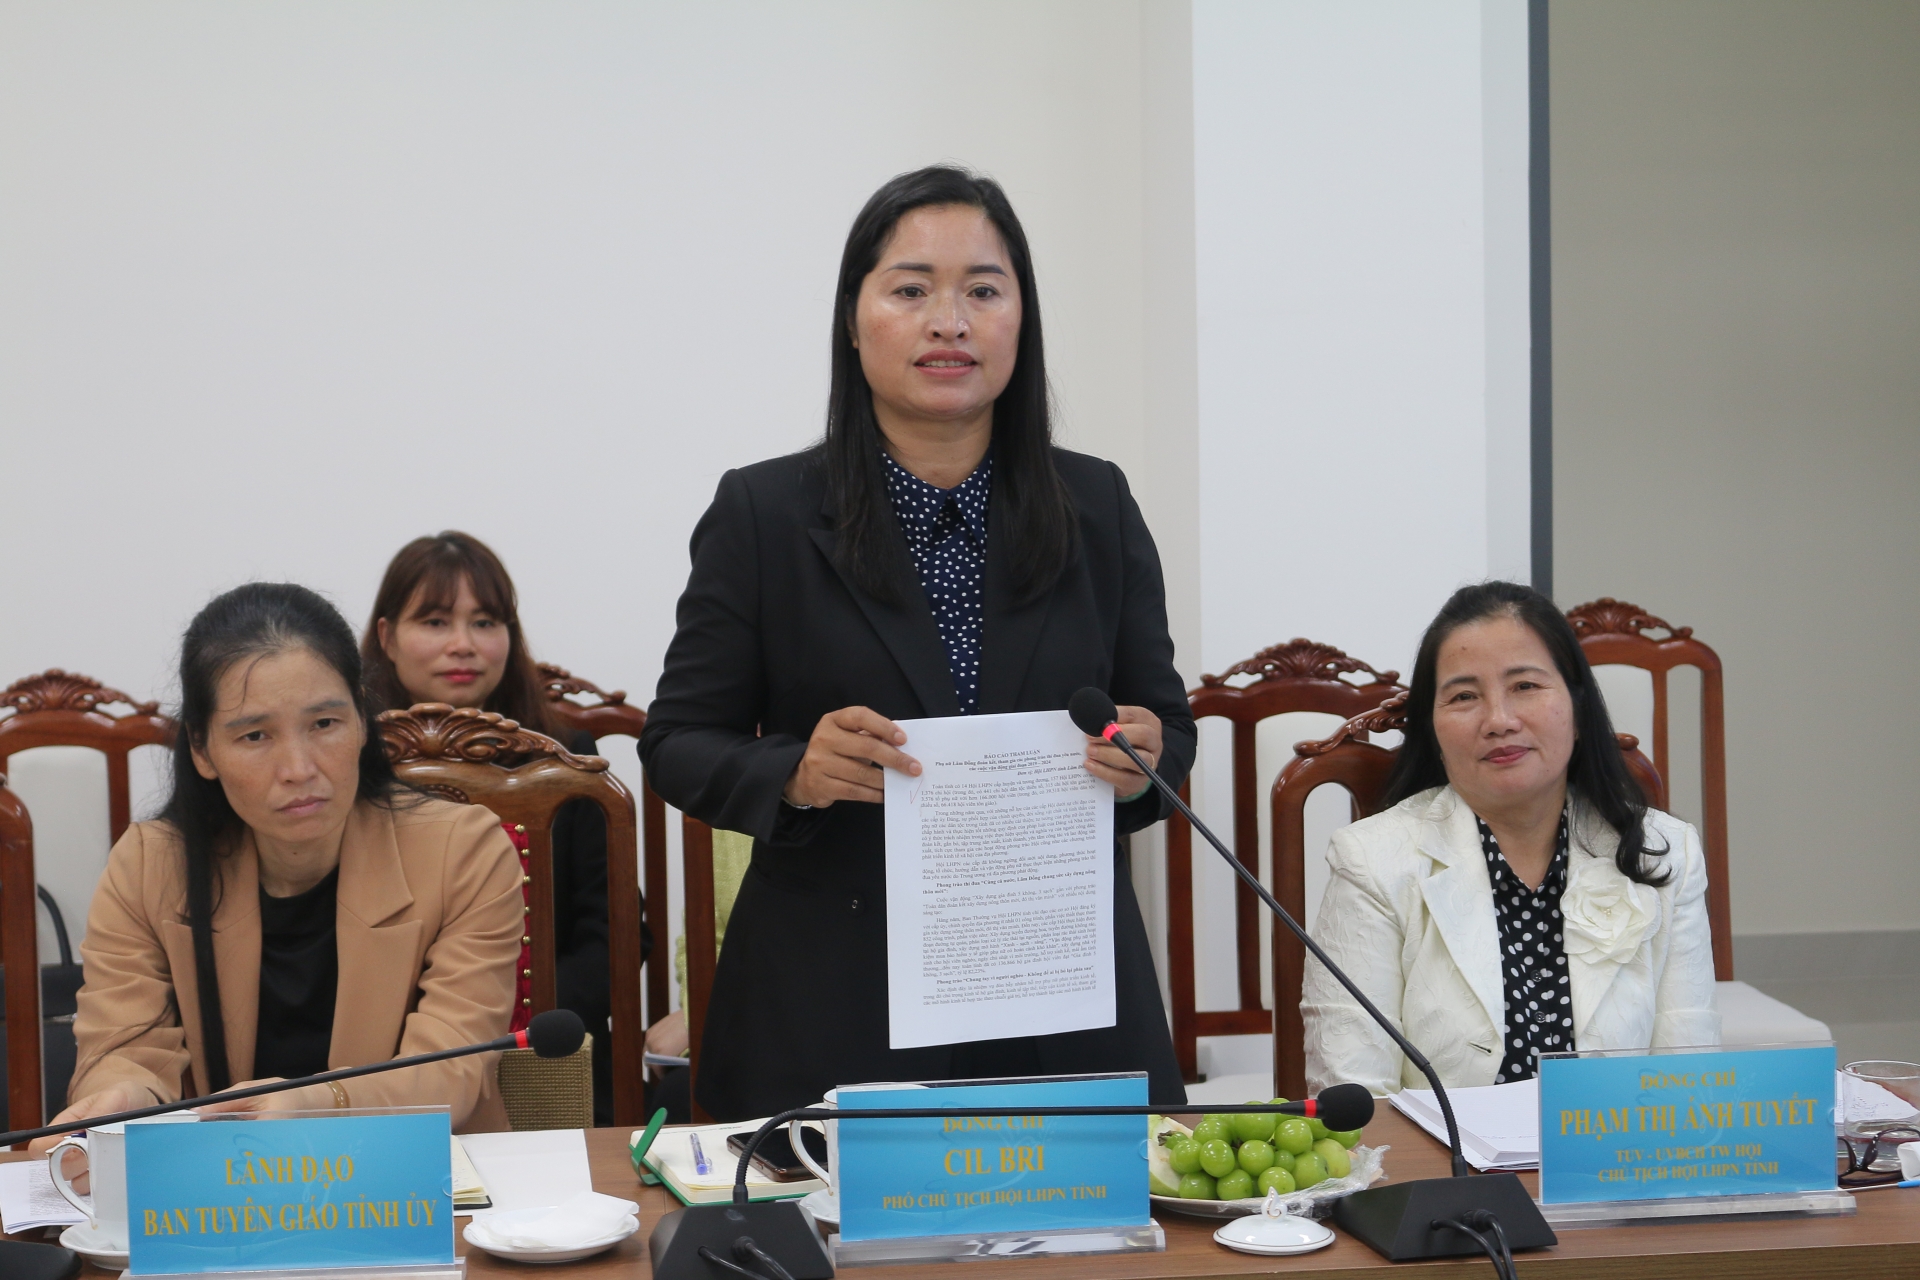 Bà Cil Bri - Phó Chủ tịch Hội LHPN tỉnh trao đổi thêm về các nội dung Đoàn công tác gợi ý